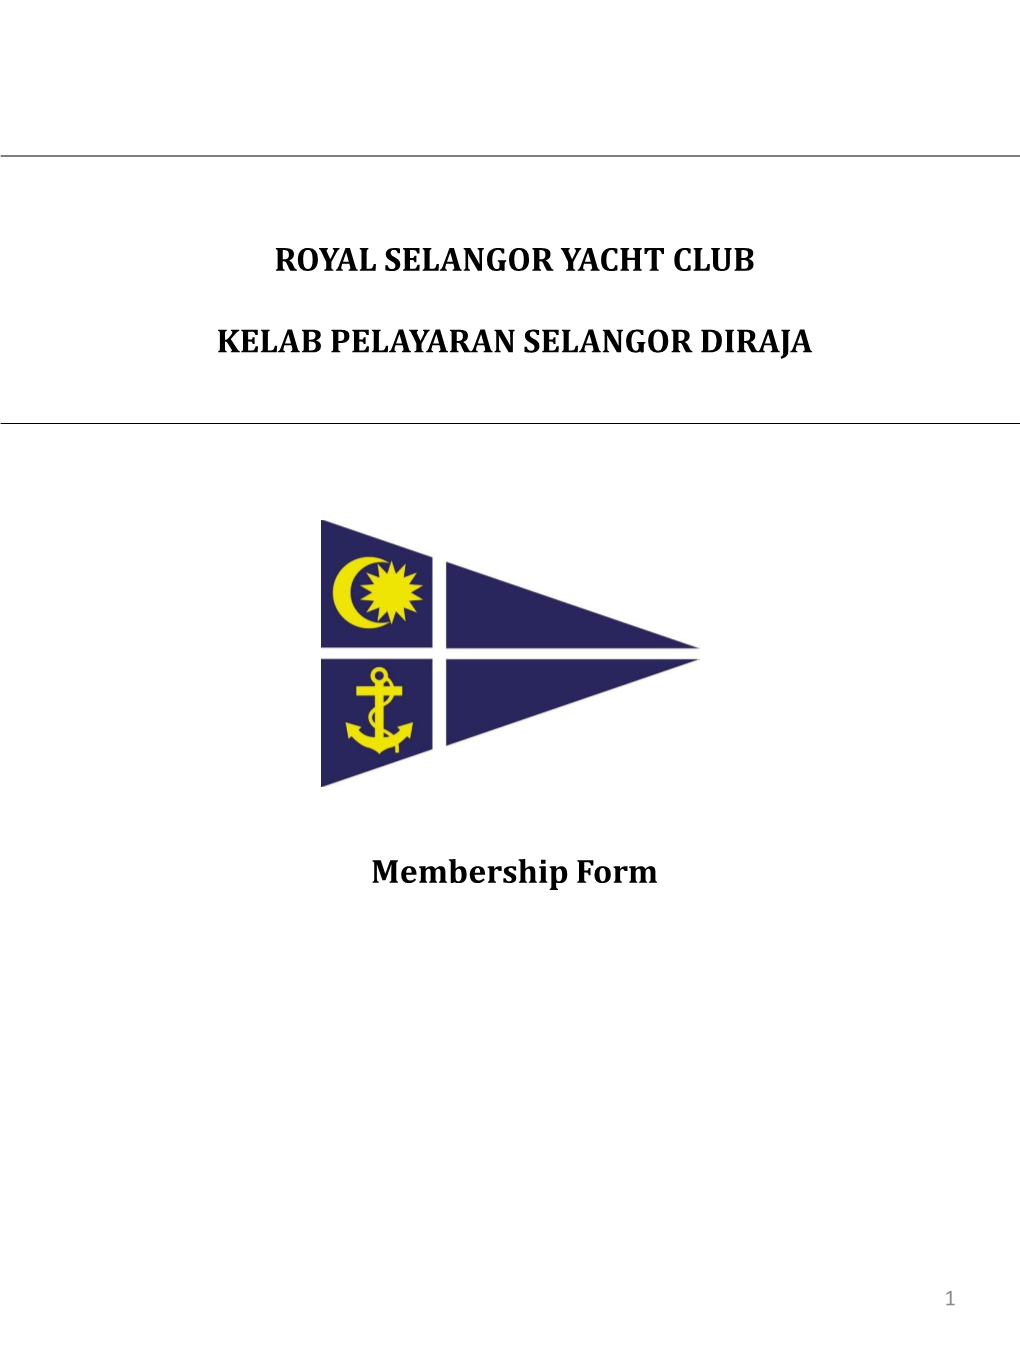 Royal Selangor Yacht Club Kelab Pelayaran Selangor